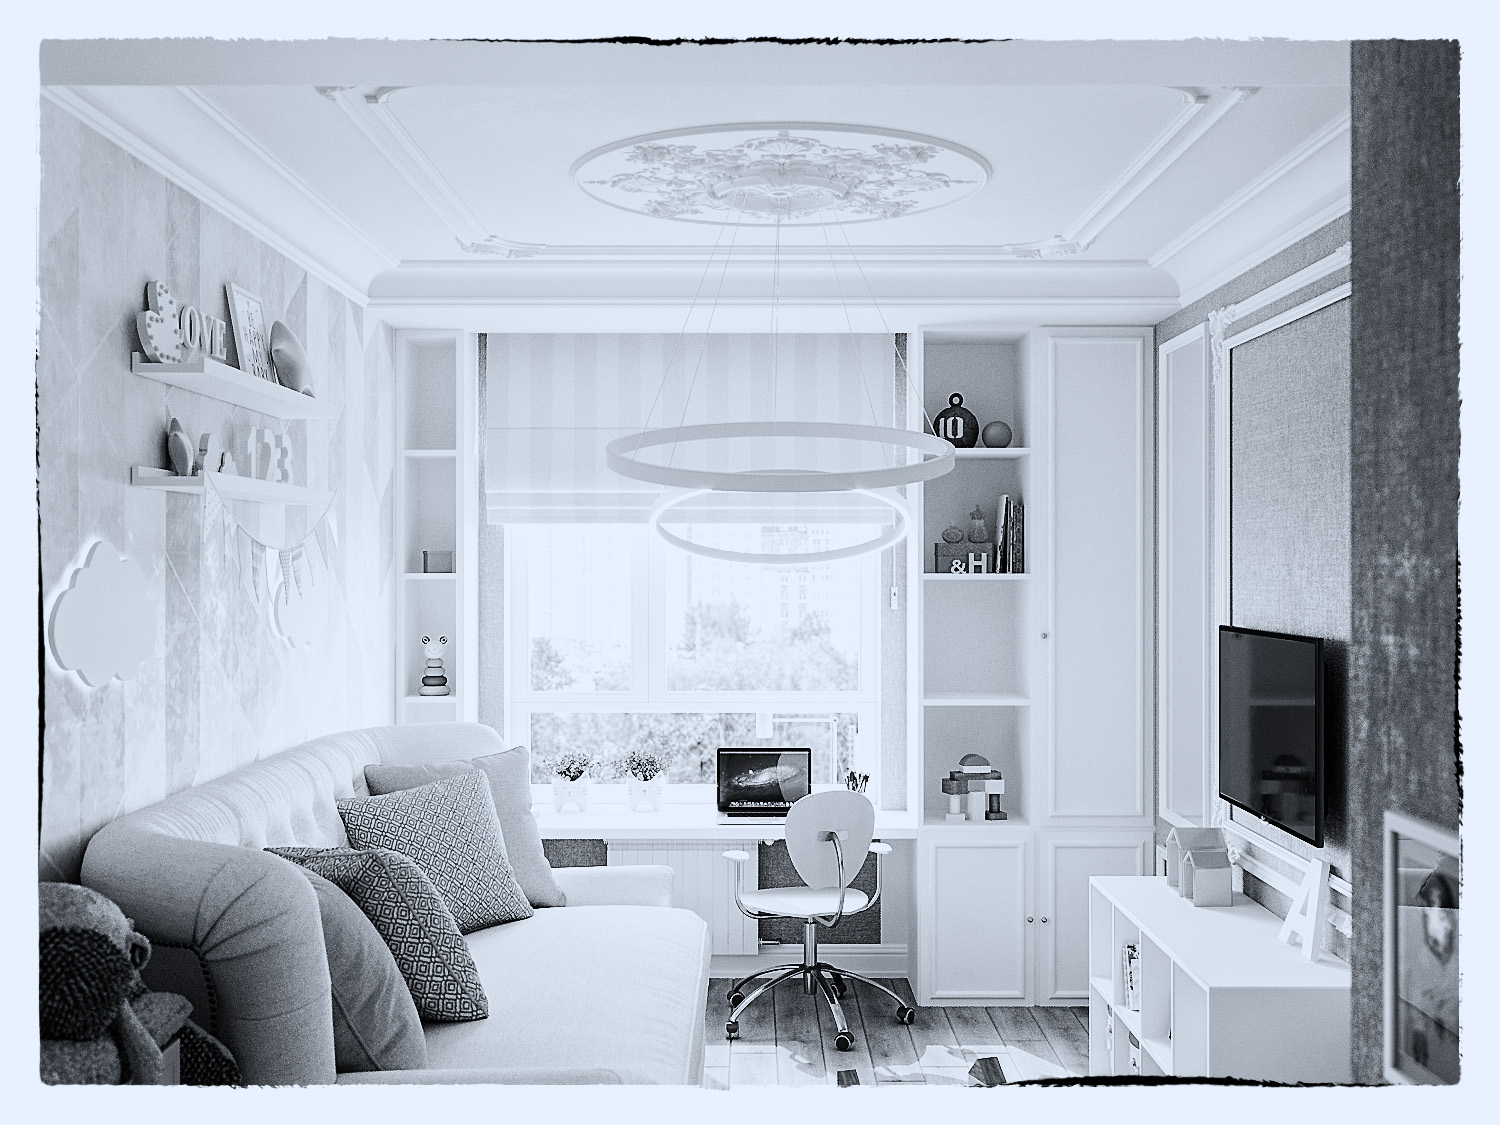 एक छोटी लड़की के लिए बच्चों का कमरा 3d max corona render में प्रस्तुत छवि